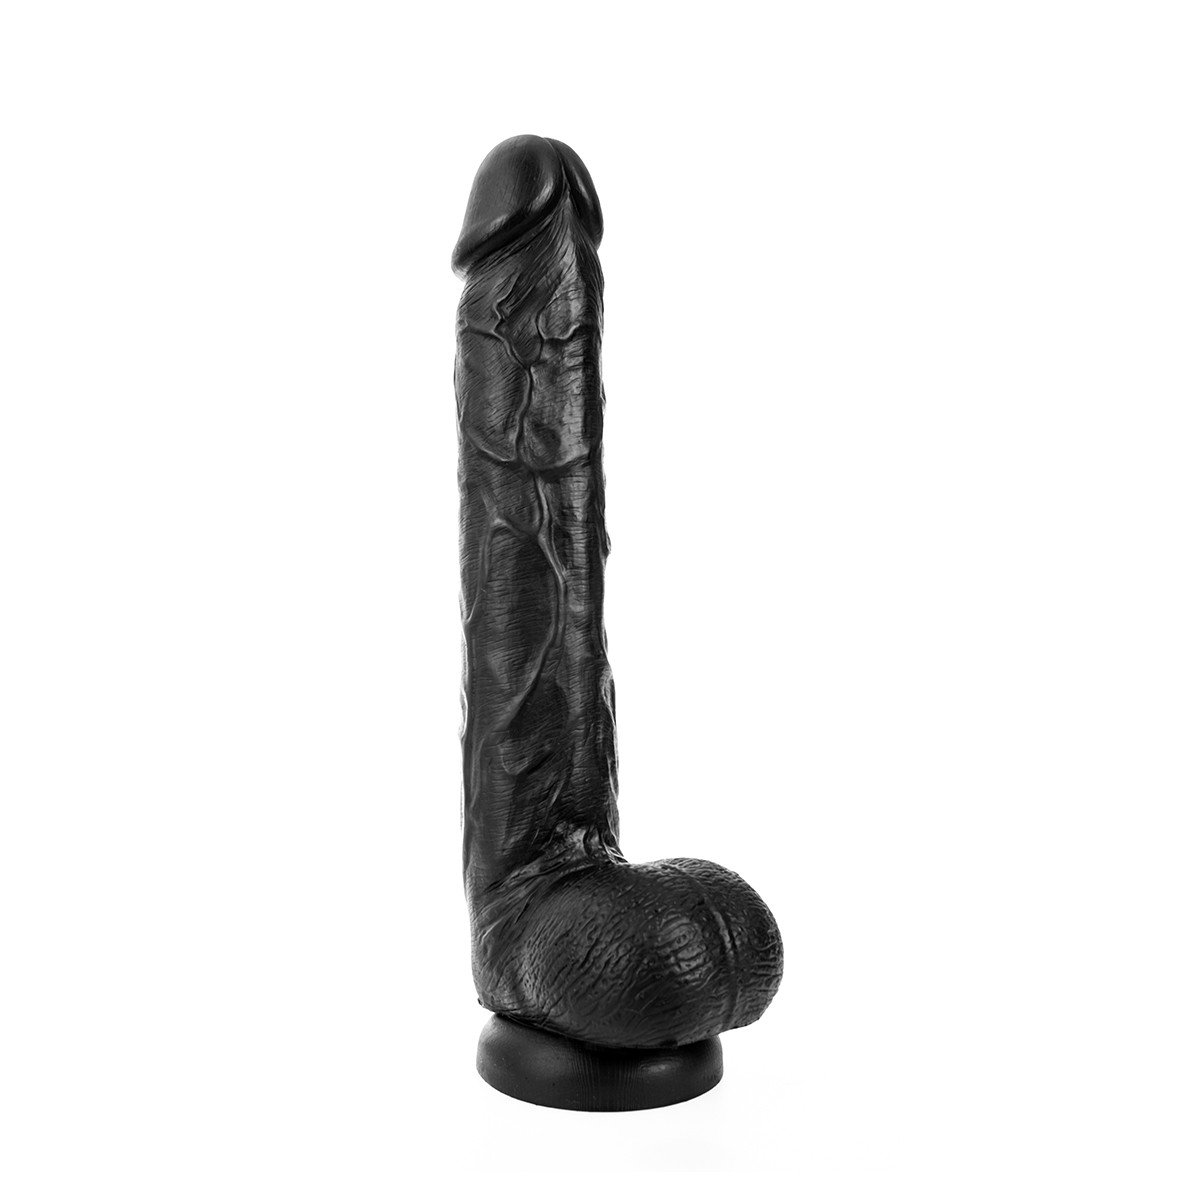 Foto van King-size dildo "Kong" 26 x 4.5 cm - zwart